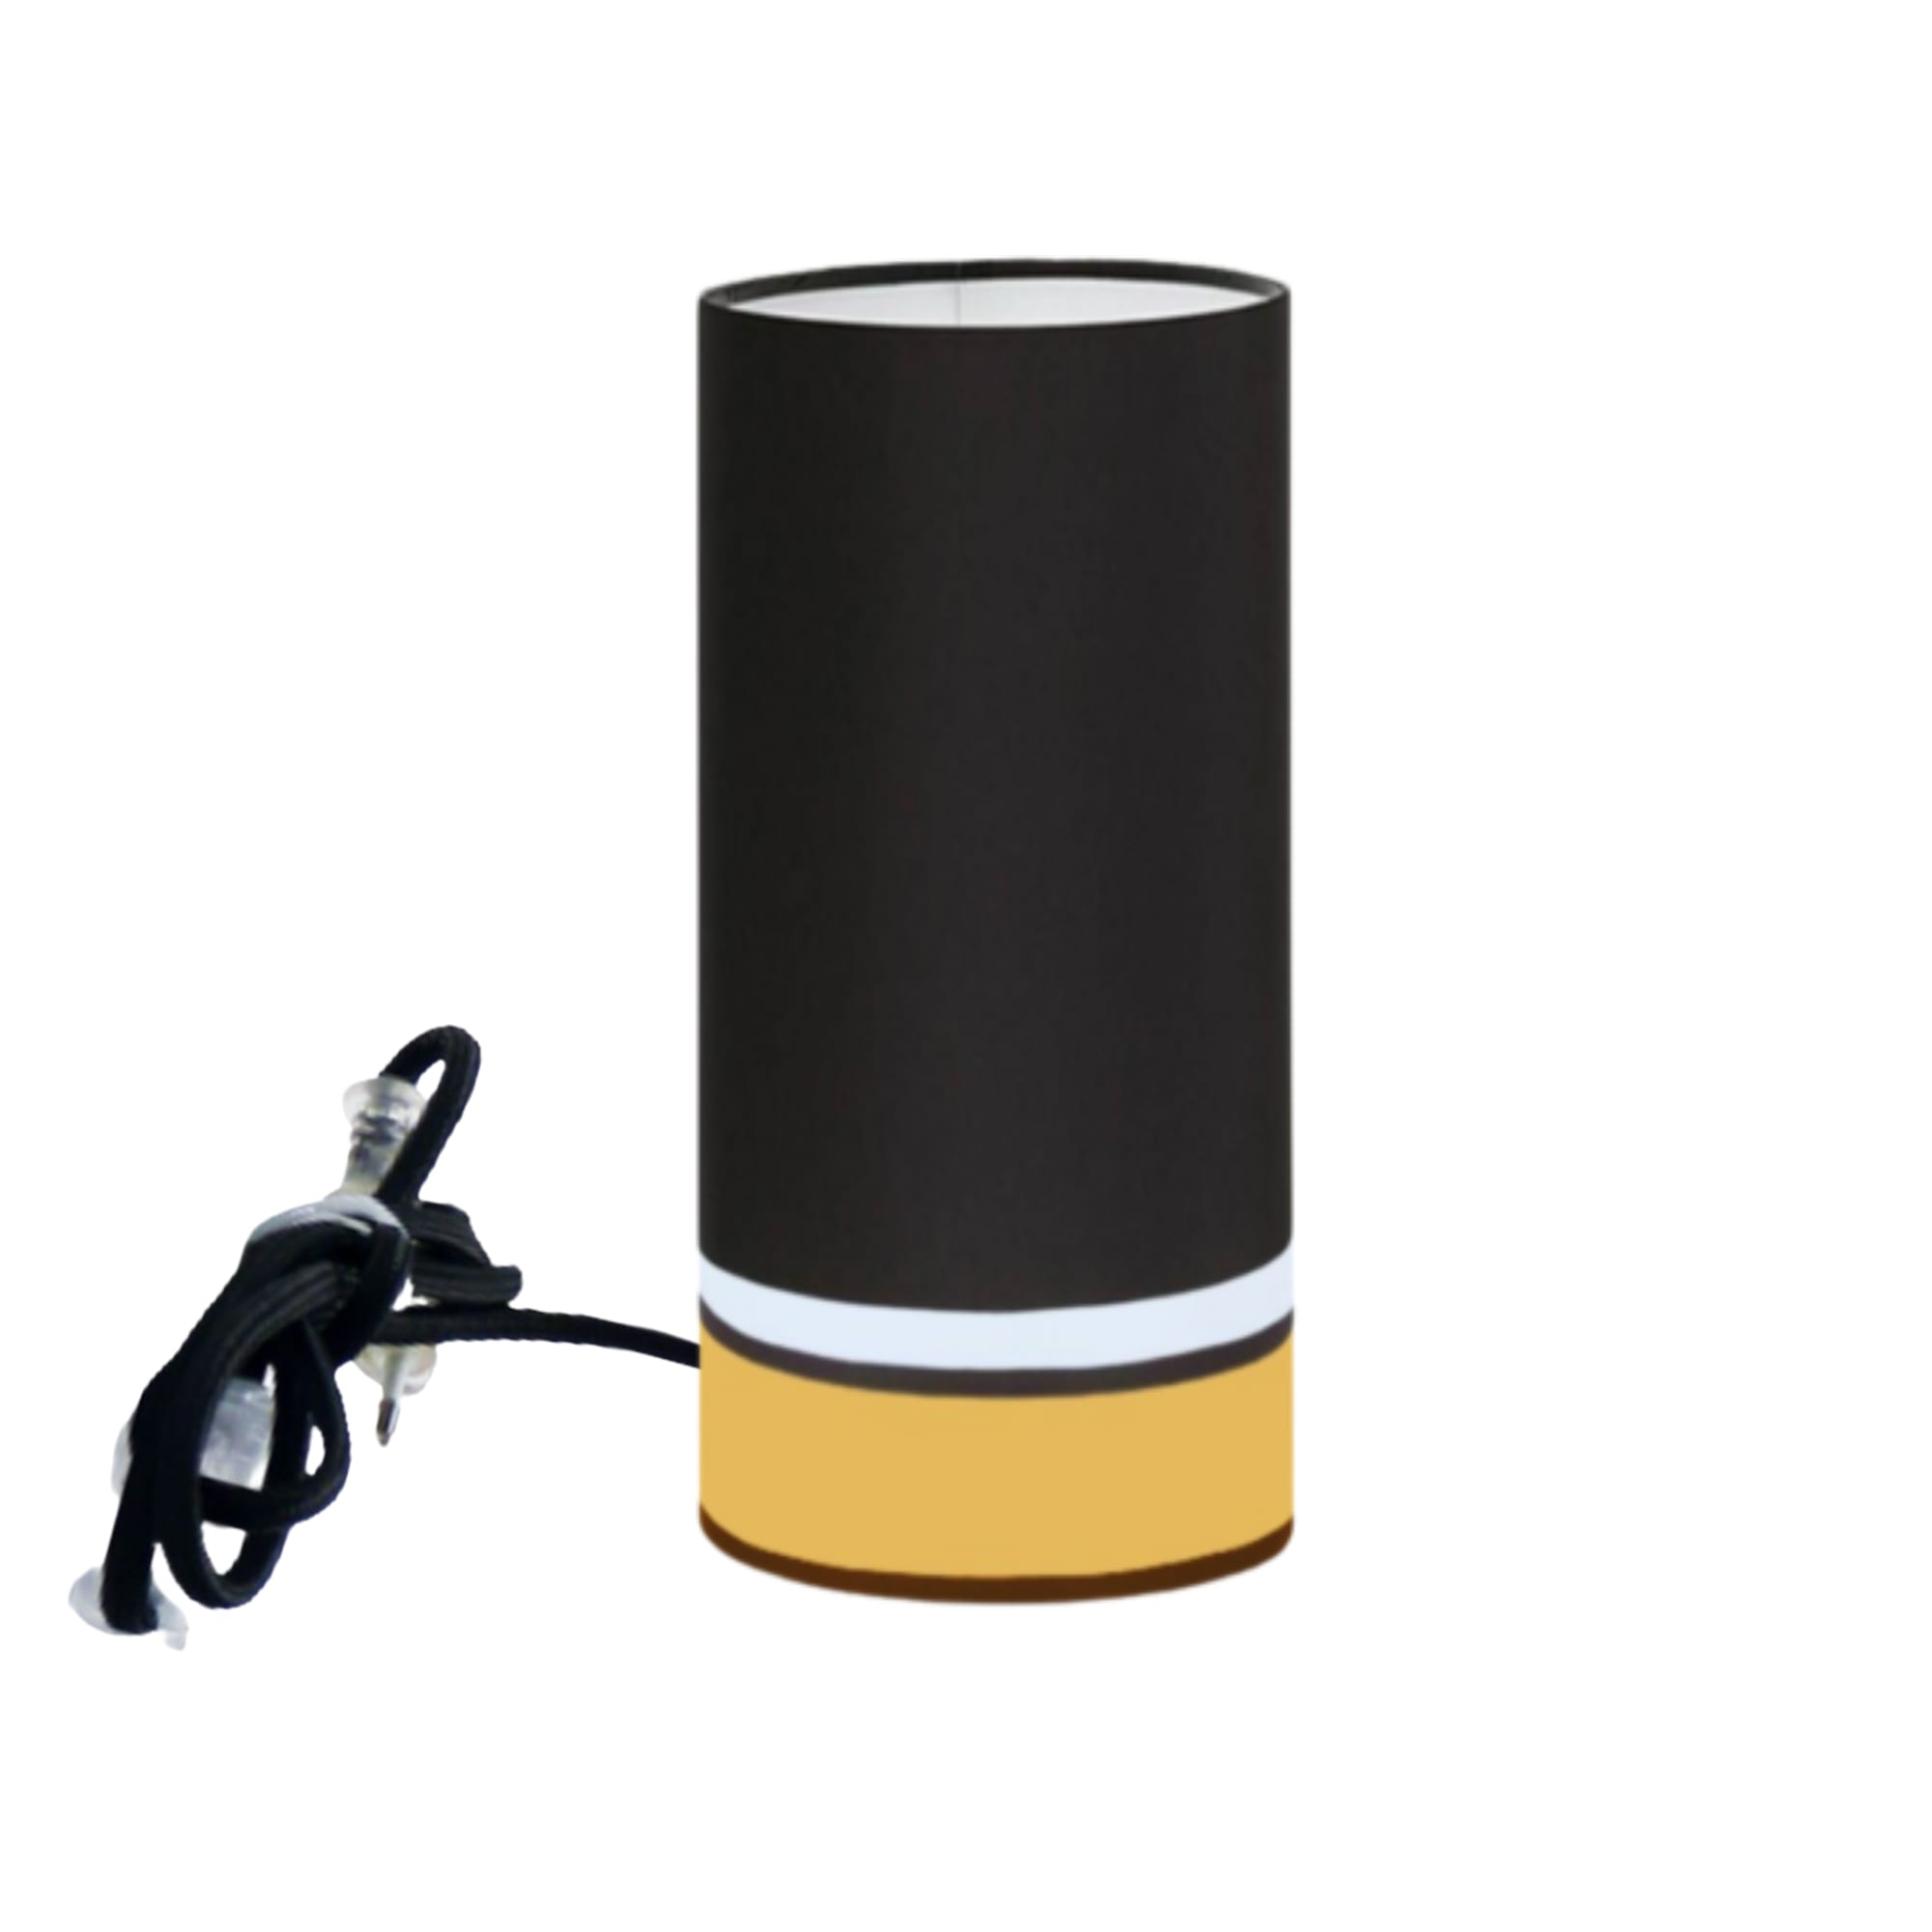 Kauze Luminaires Lampe à poser couleur noir et jaune Ø 15cm x H45cm